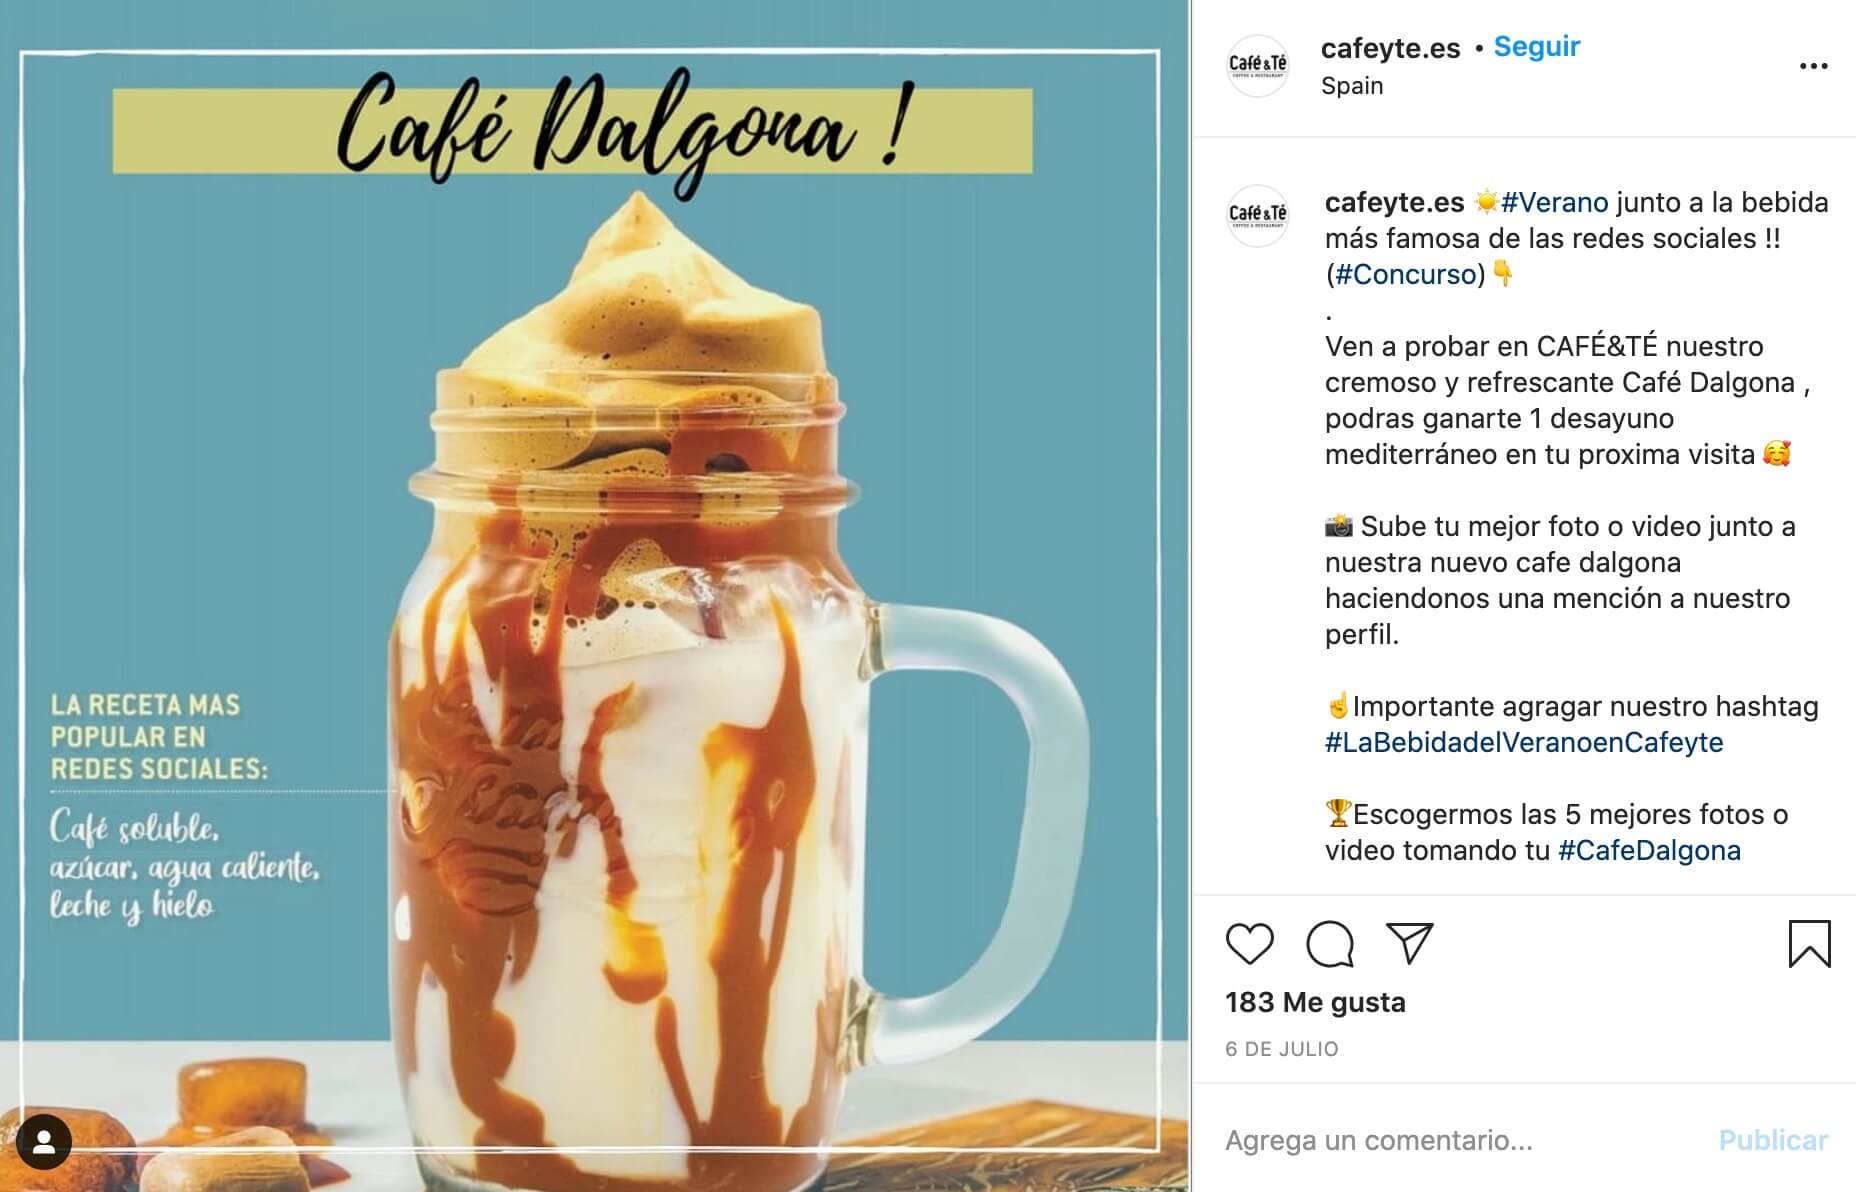 Publicación de Instagram que anuncia el concurso de instagram de cafetería Café y Té #LaBebidaDelVeranoCafeyte